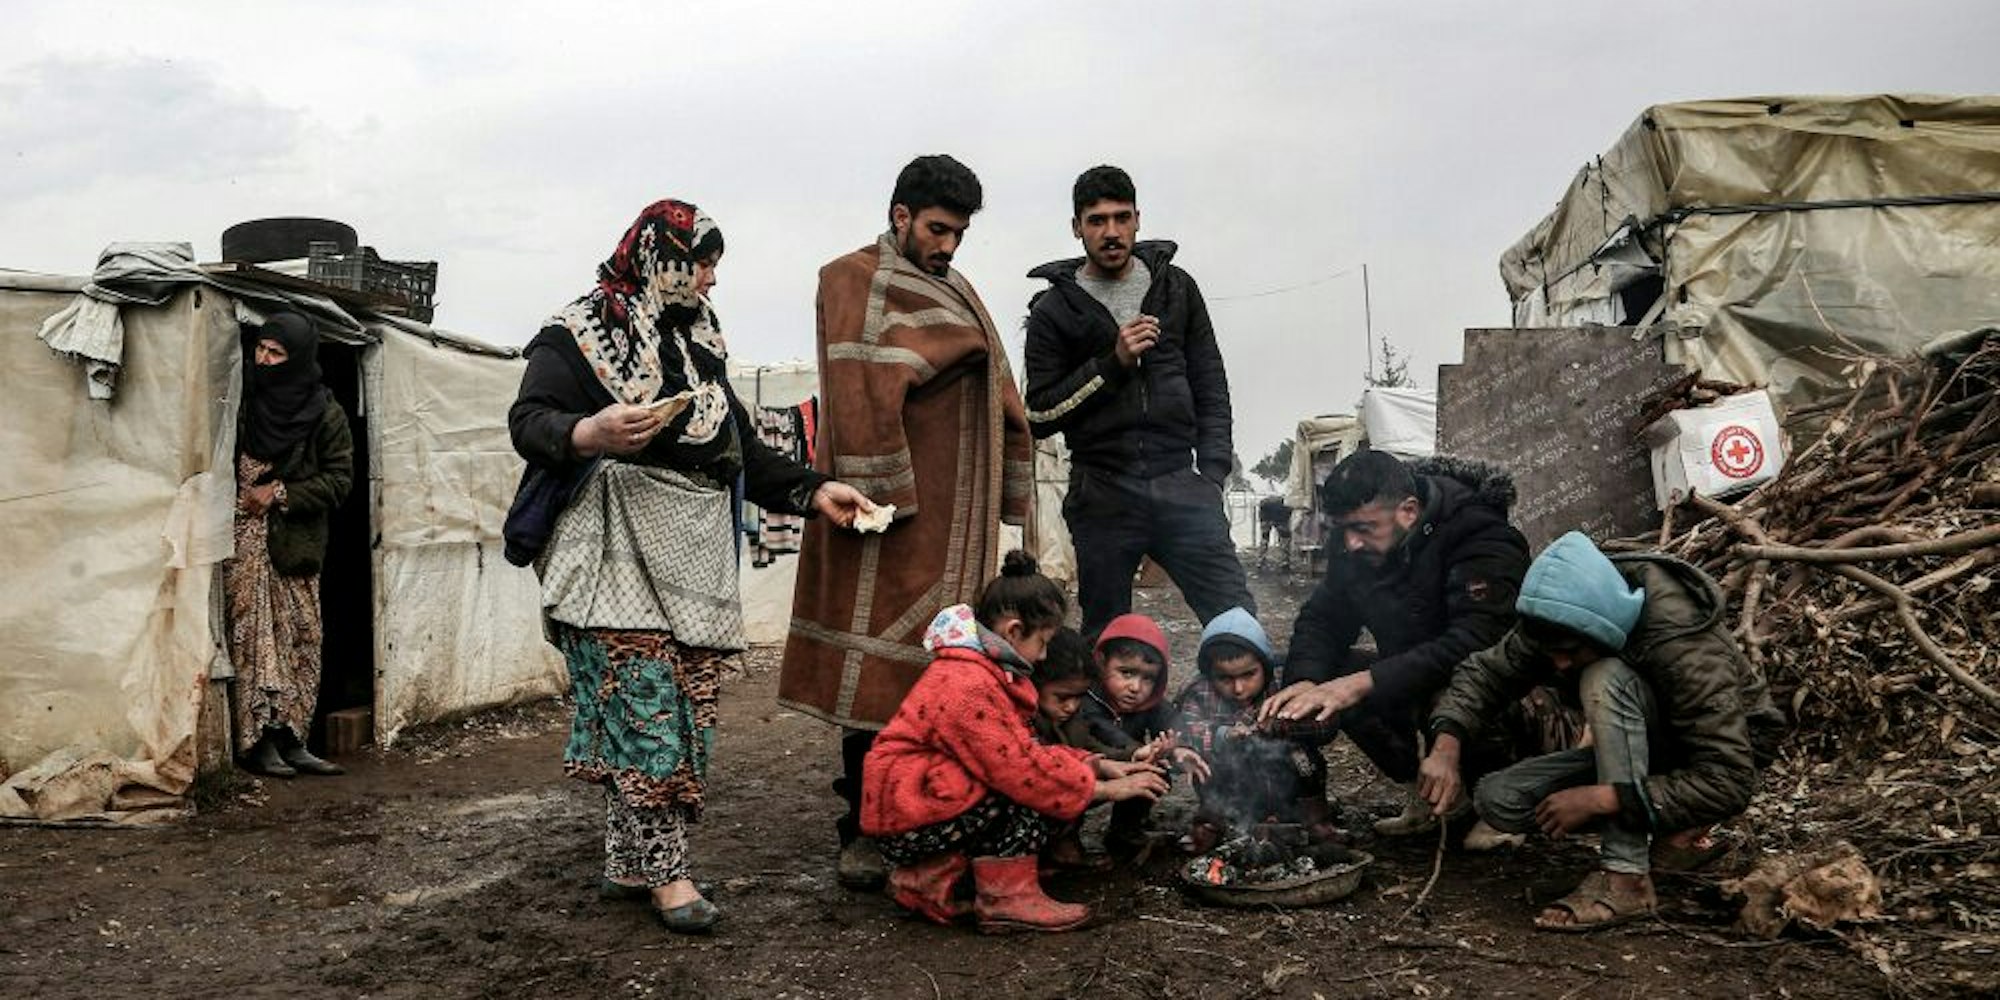 Die Bilder in den Medien motivieren Menschen, sich zu engagieren. Hier ein Flüchtlingslager im Libanon in diesem Winter